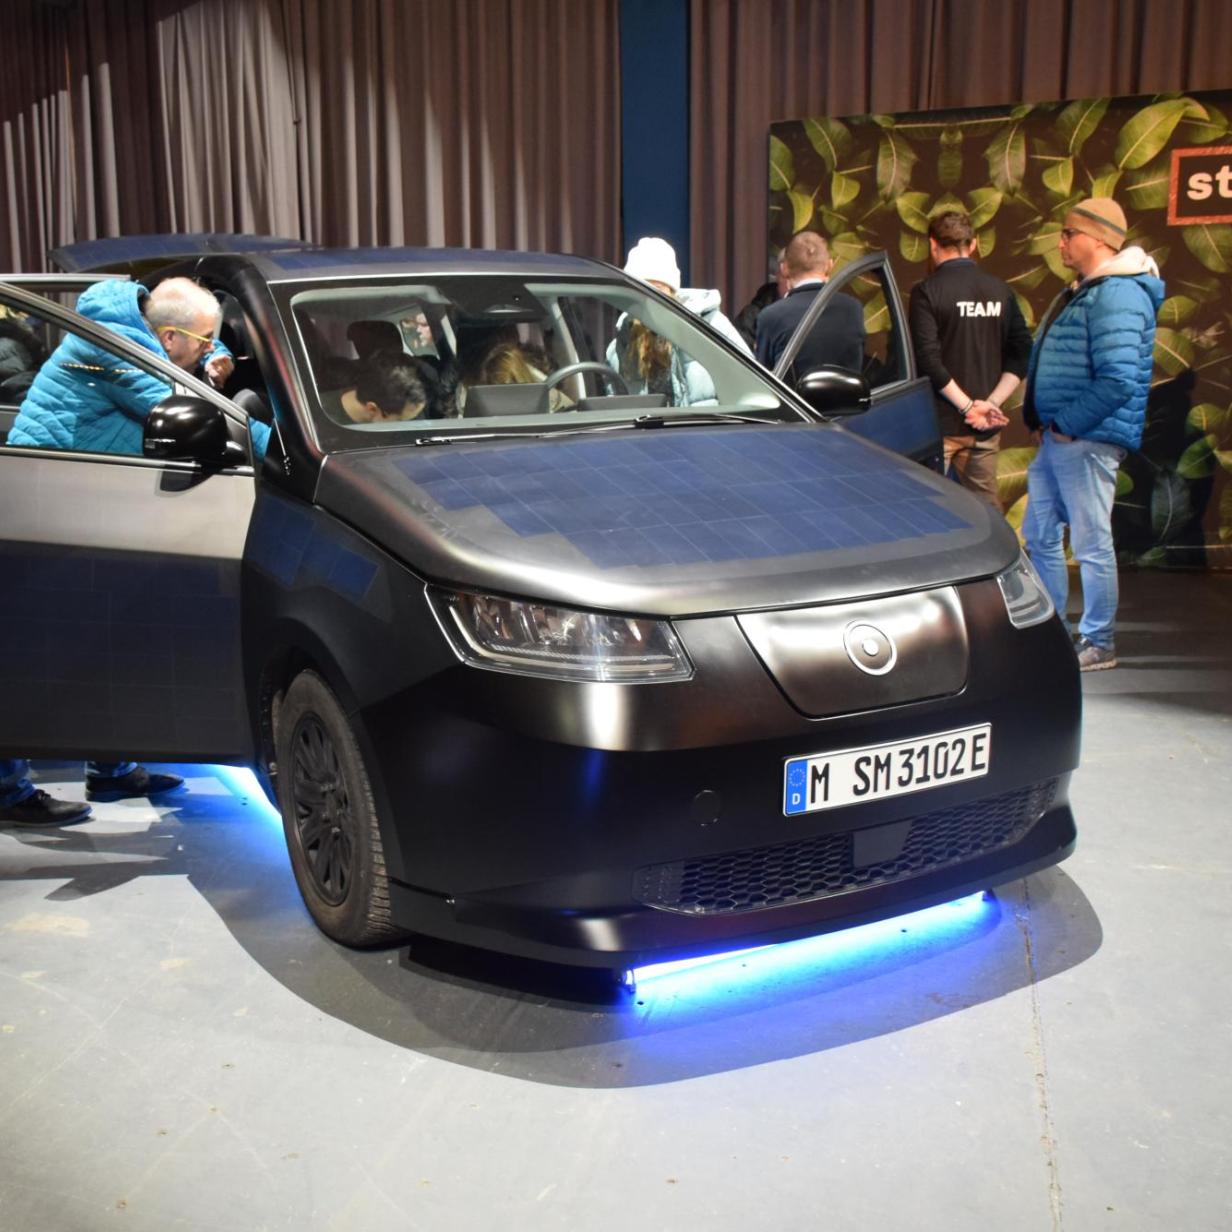 Sion: Probesitzen im Solar-E-Auto mit ungewisser Zukunft